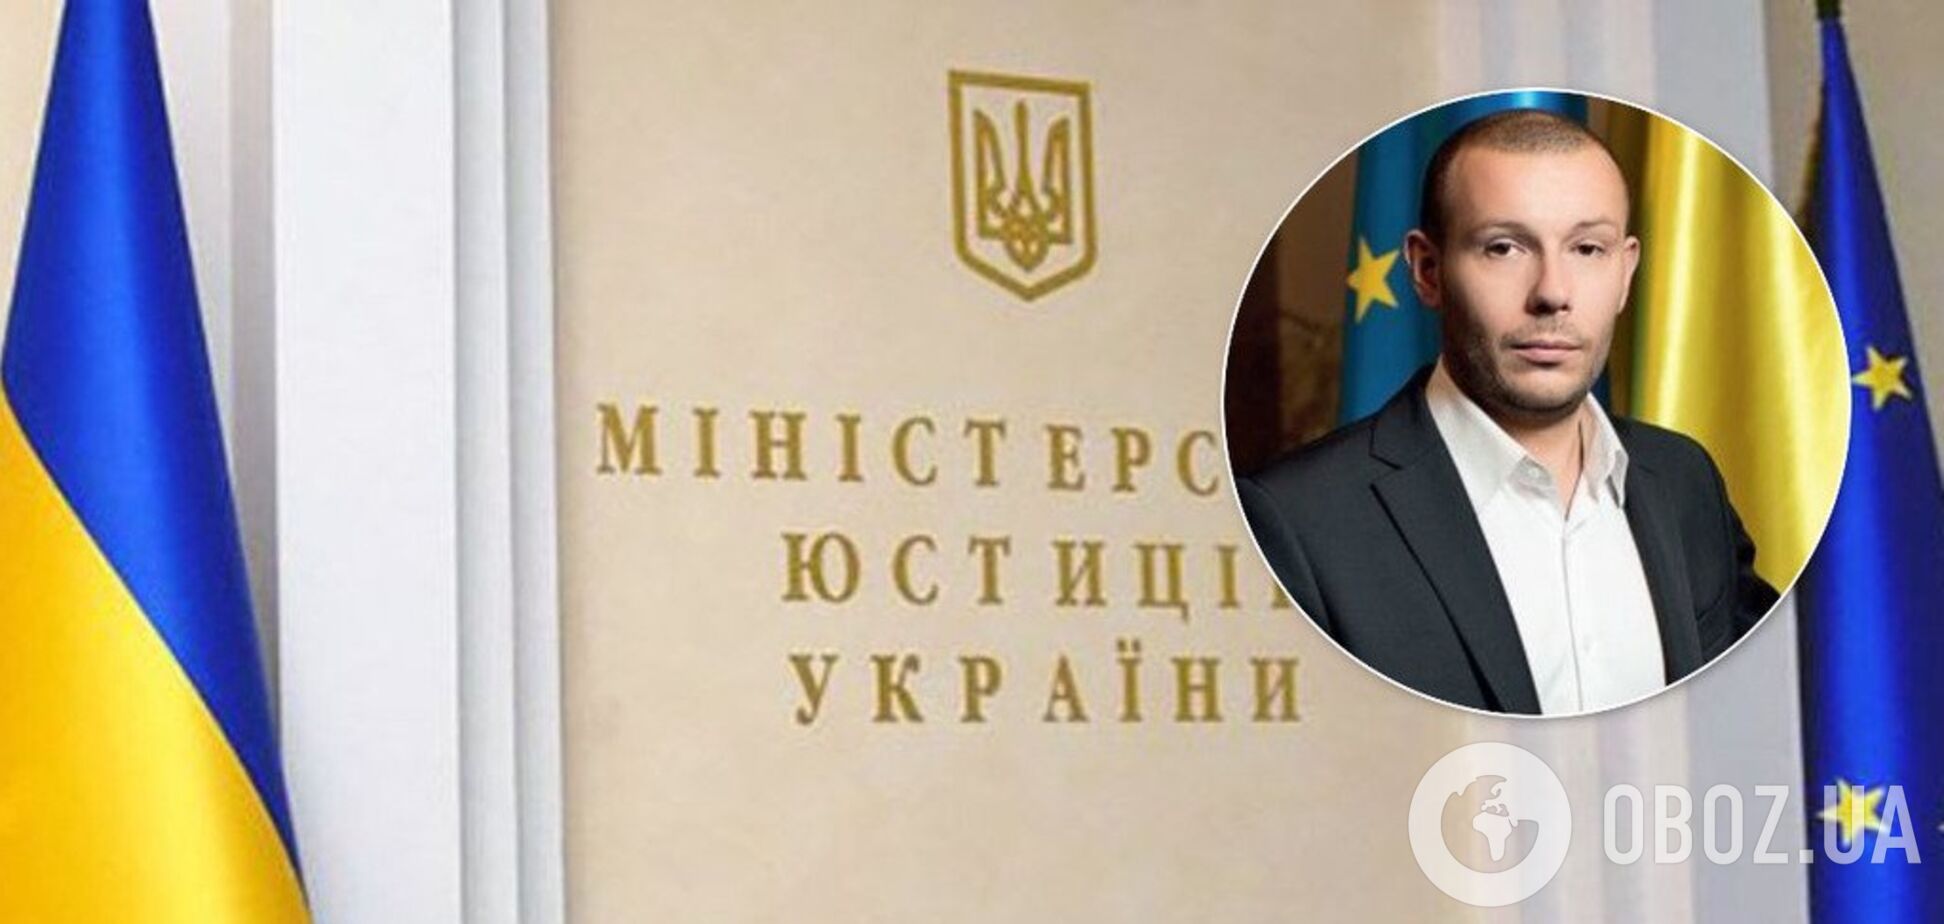 В Минюст на топ-должность протянули скандального коррупционера